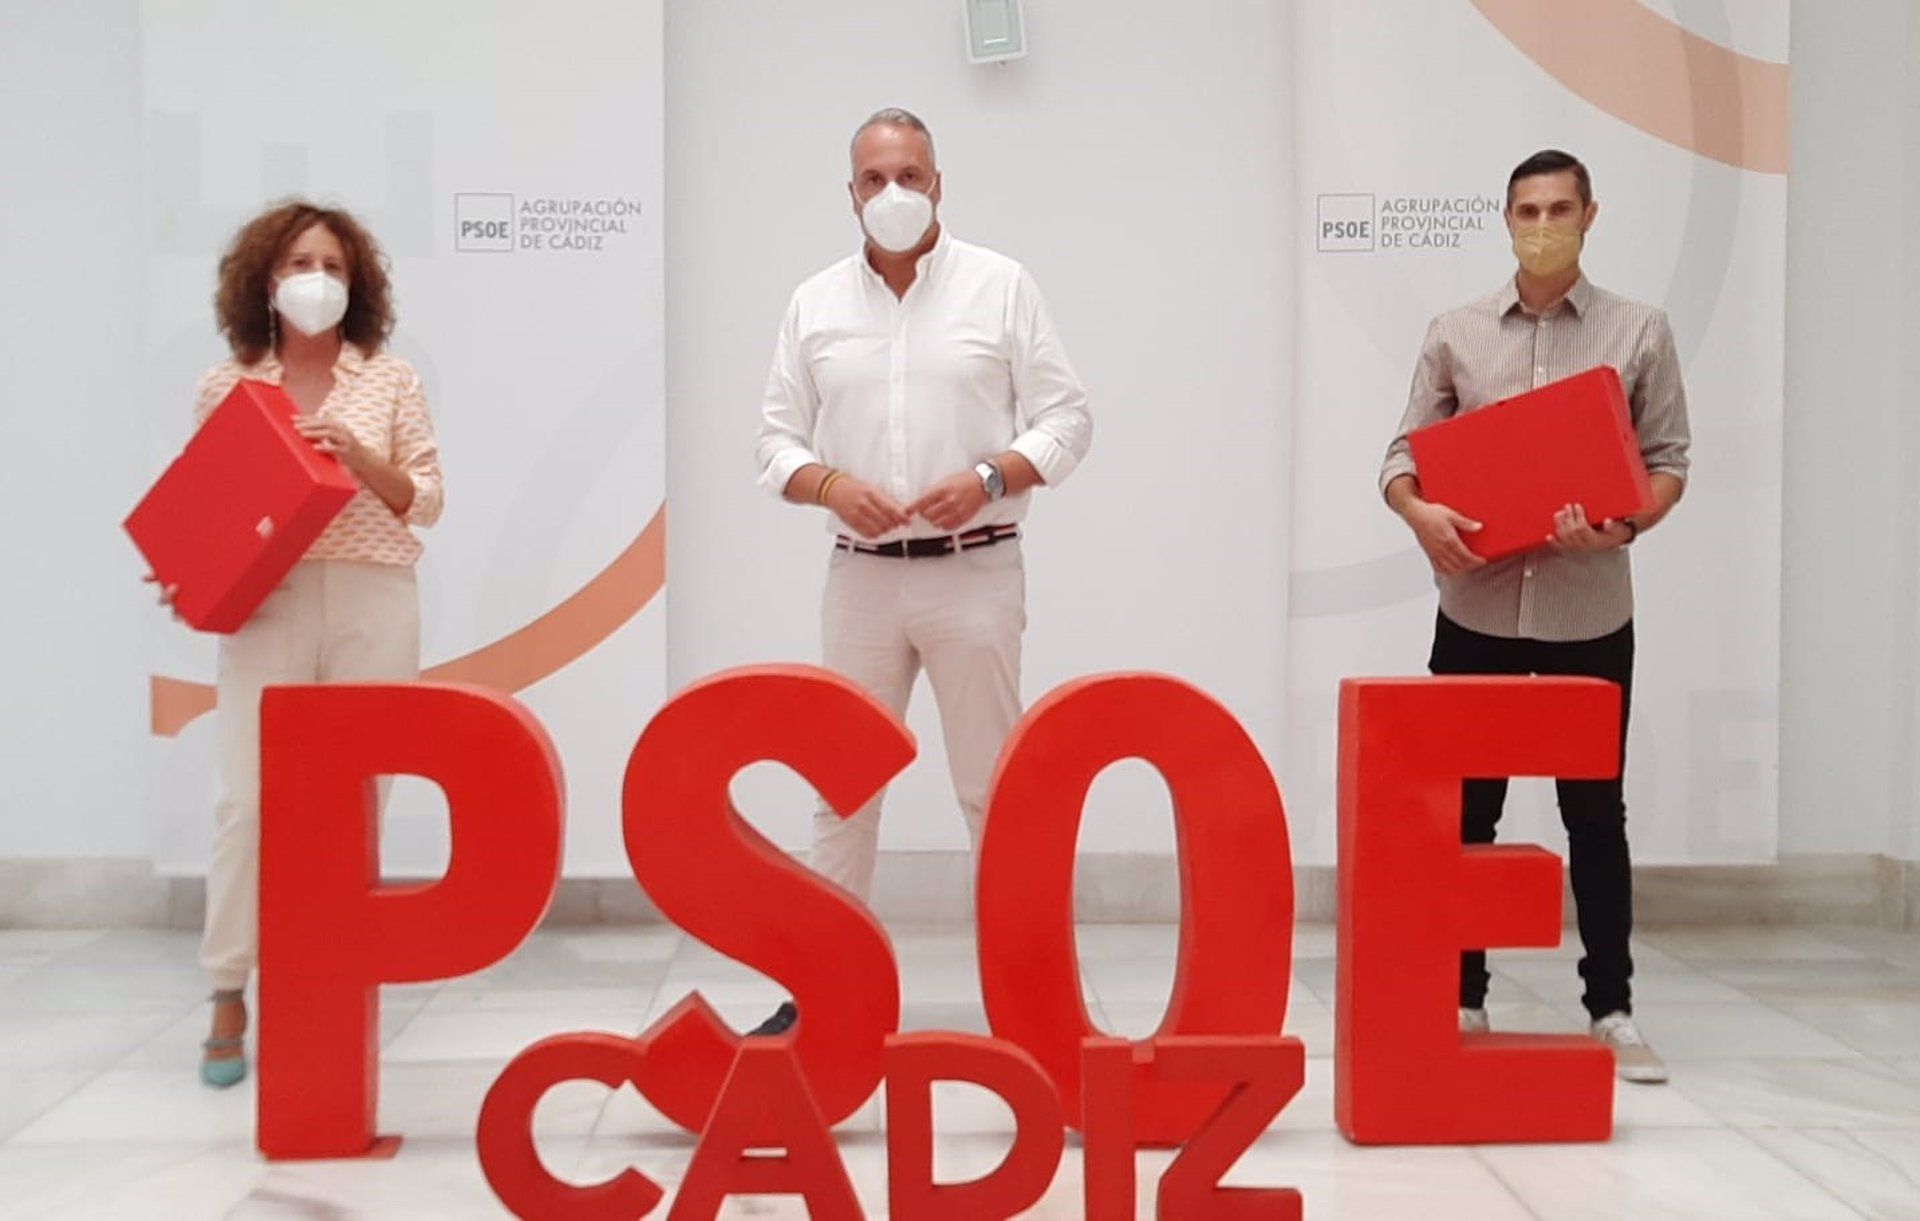 El penúltimo asalto en el PSOE de Cádiz.